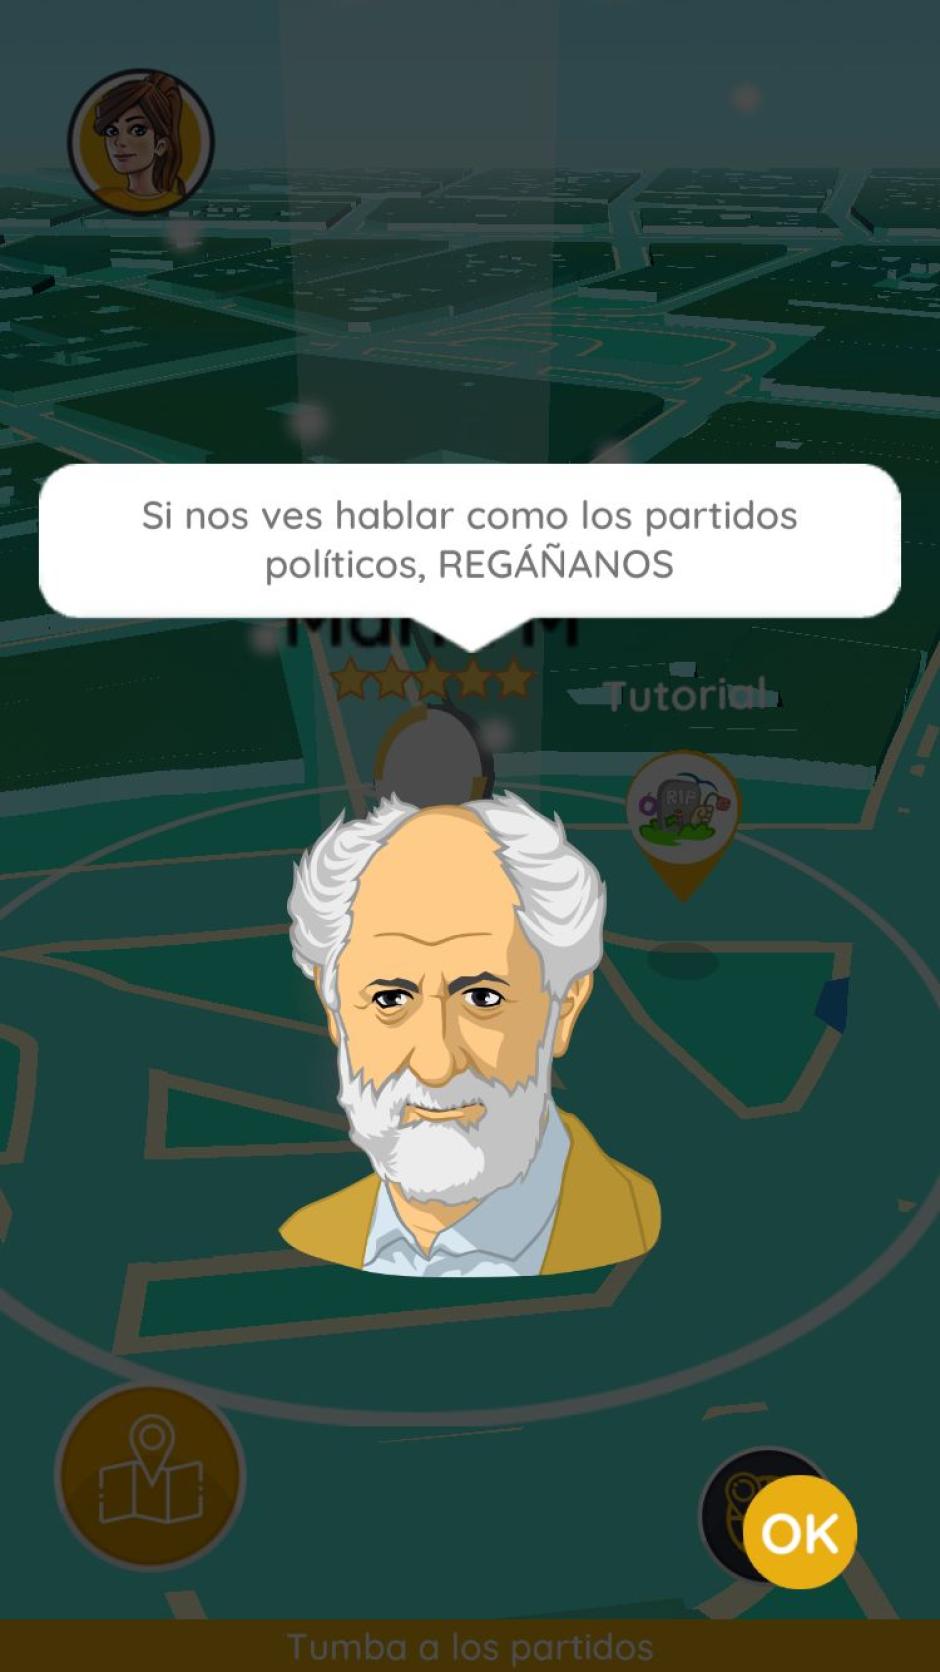 Imagen de Luis Cueto en la App de su partido